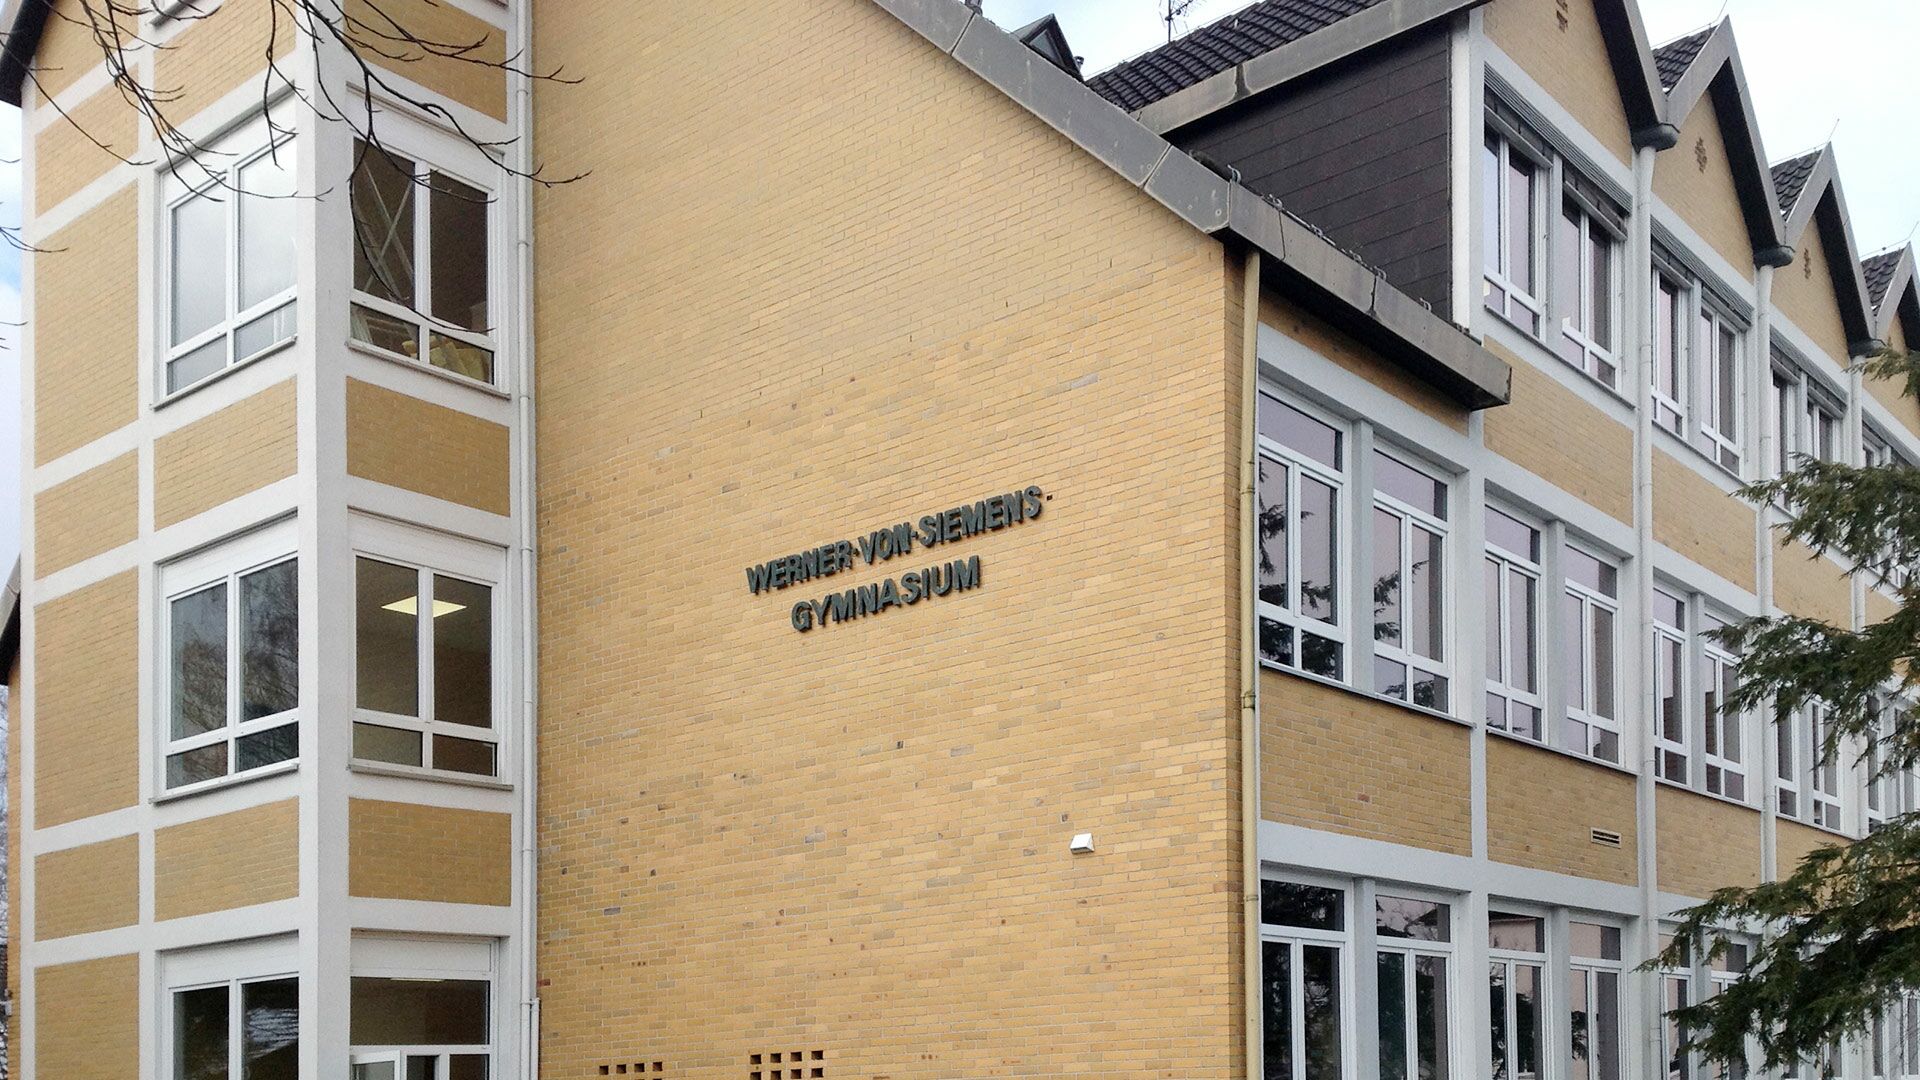 Werner-von-Siemens-Gymnasium B.E.G. Brück Electronic GmbH